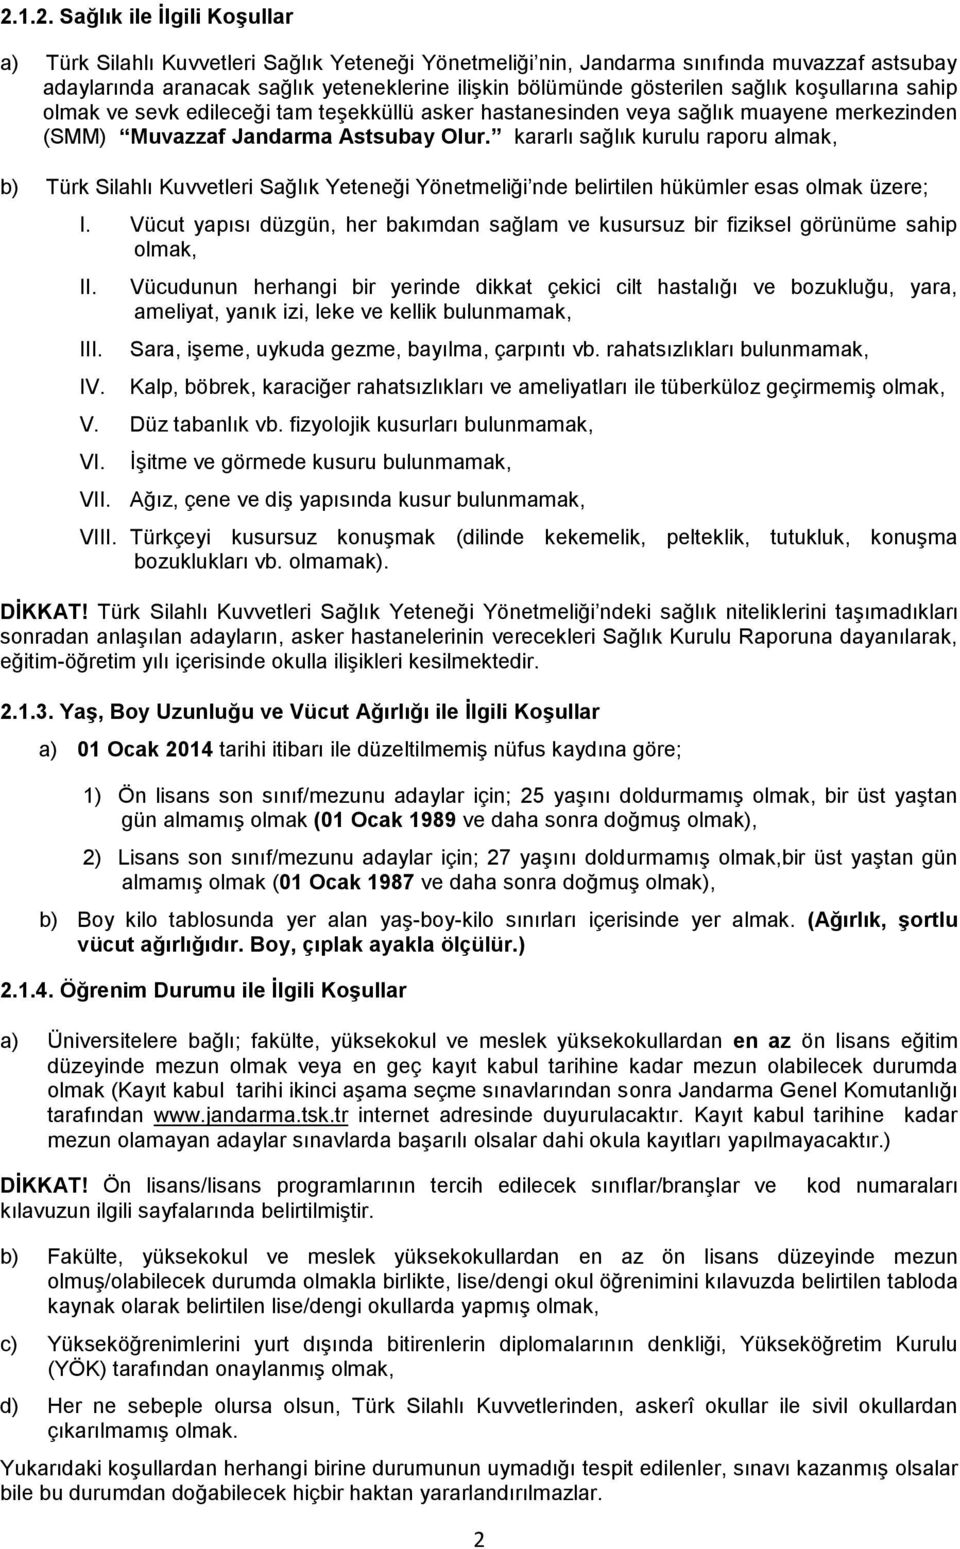 kararlı sağlık kurulu raporu almak, b) Türk Silahlı Kuvvetleri Sağlık Yeteneği Yönetmeliği nde belirtilen hükümler esas olmak üzere; I.